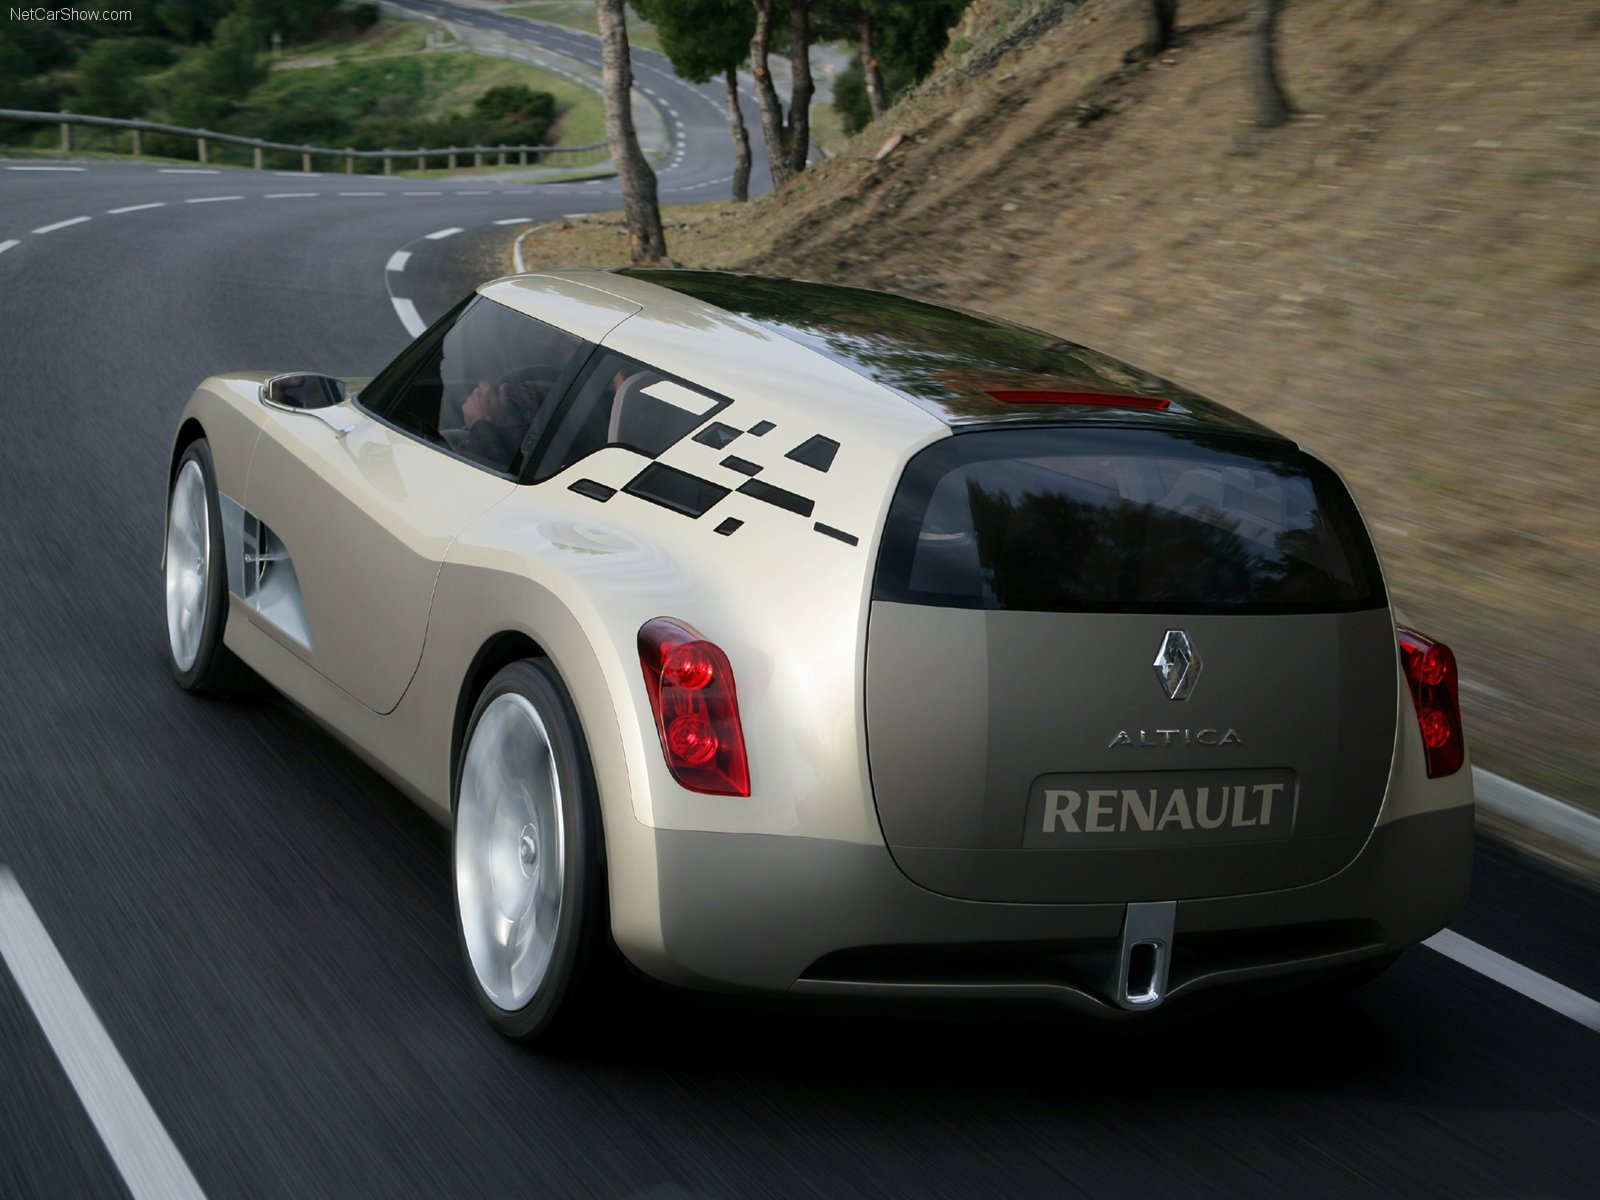 renault, Altica, Concept, Cars, 2006 Wallpaper